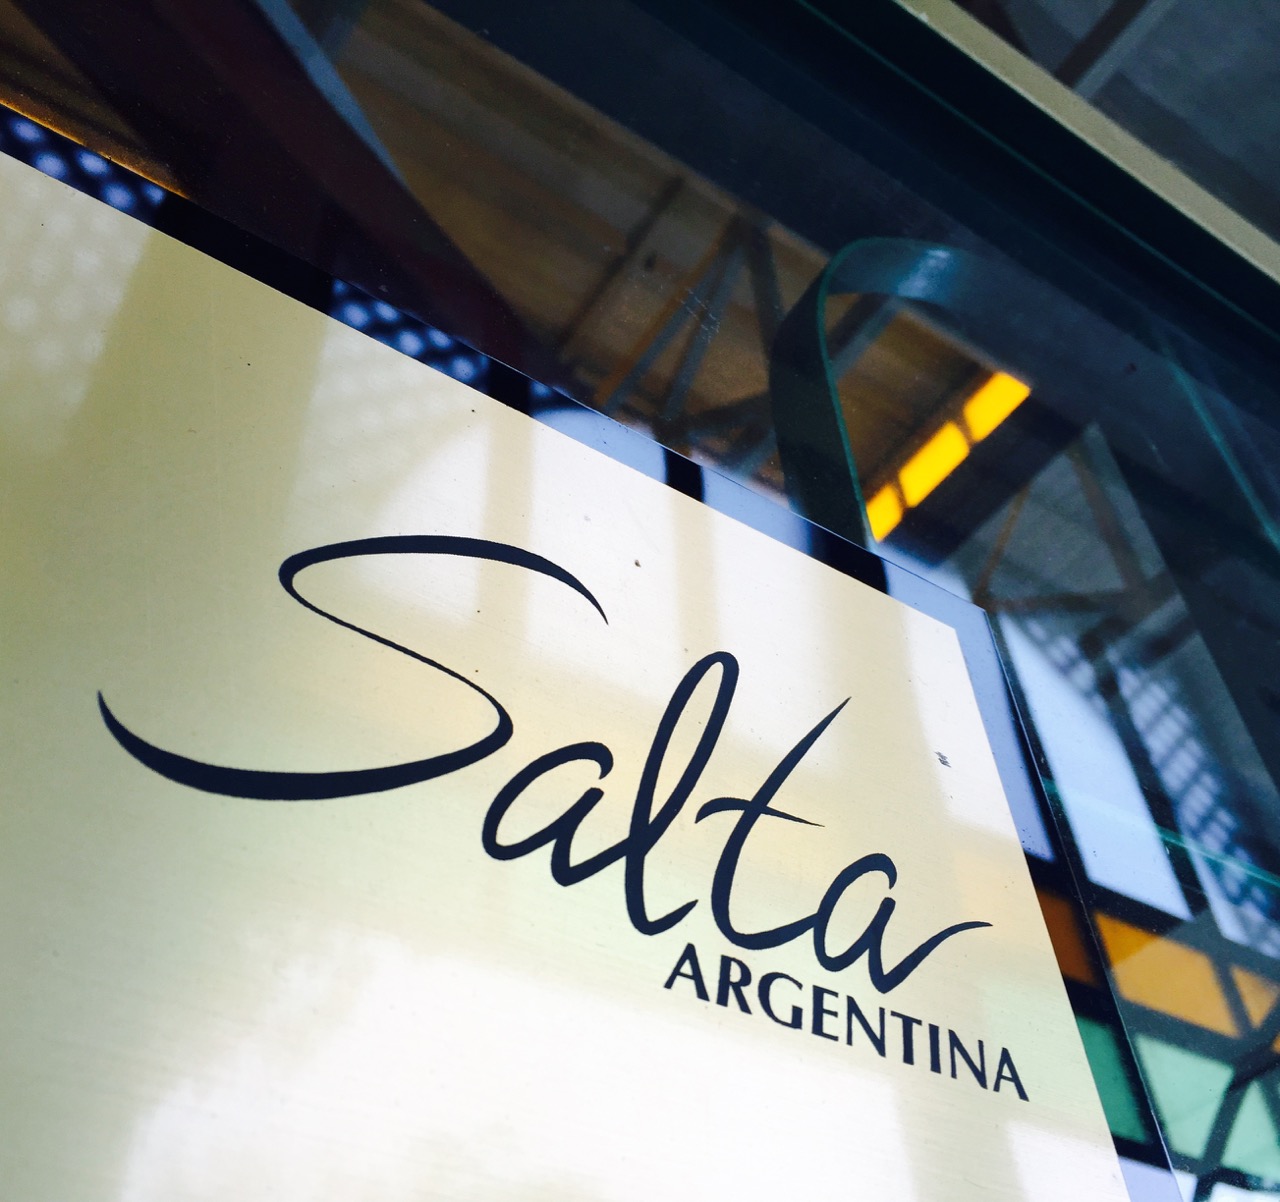 Salta - la Linda (die Schöne) - ist eine Stadt im Nordwesten Argentiniens.